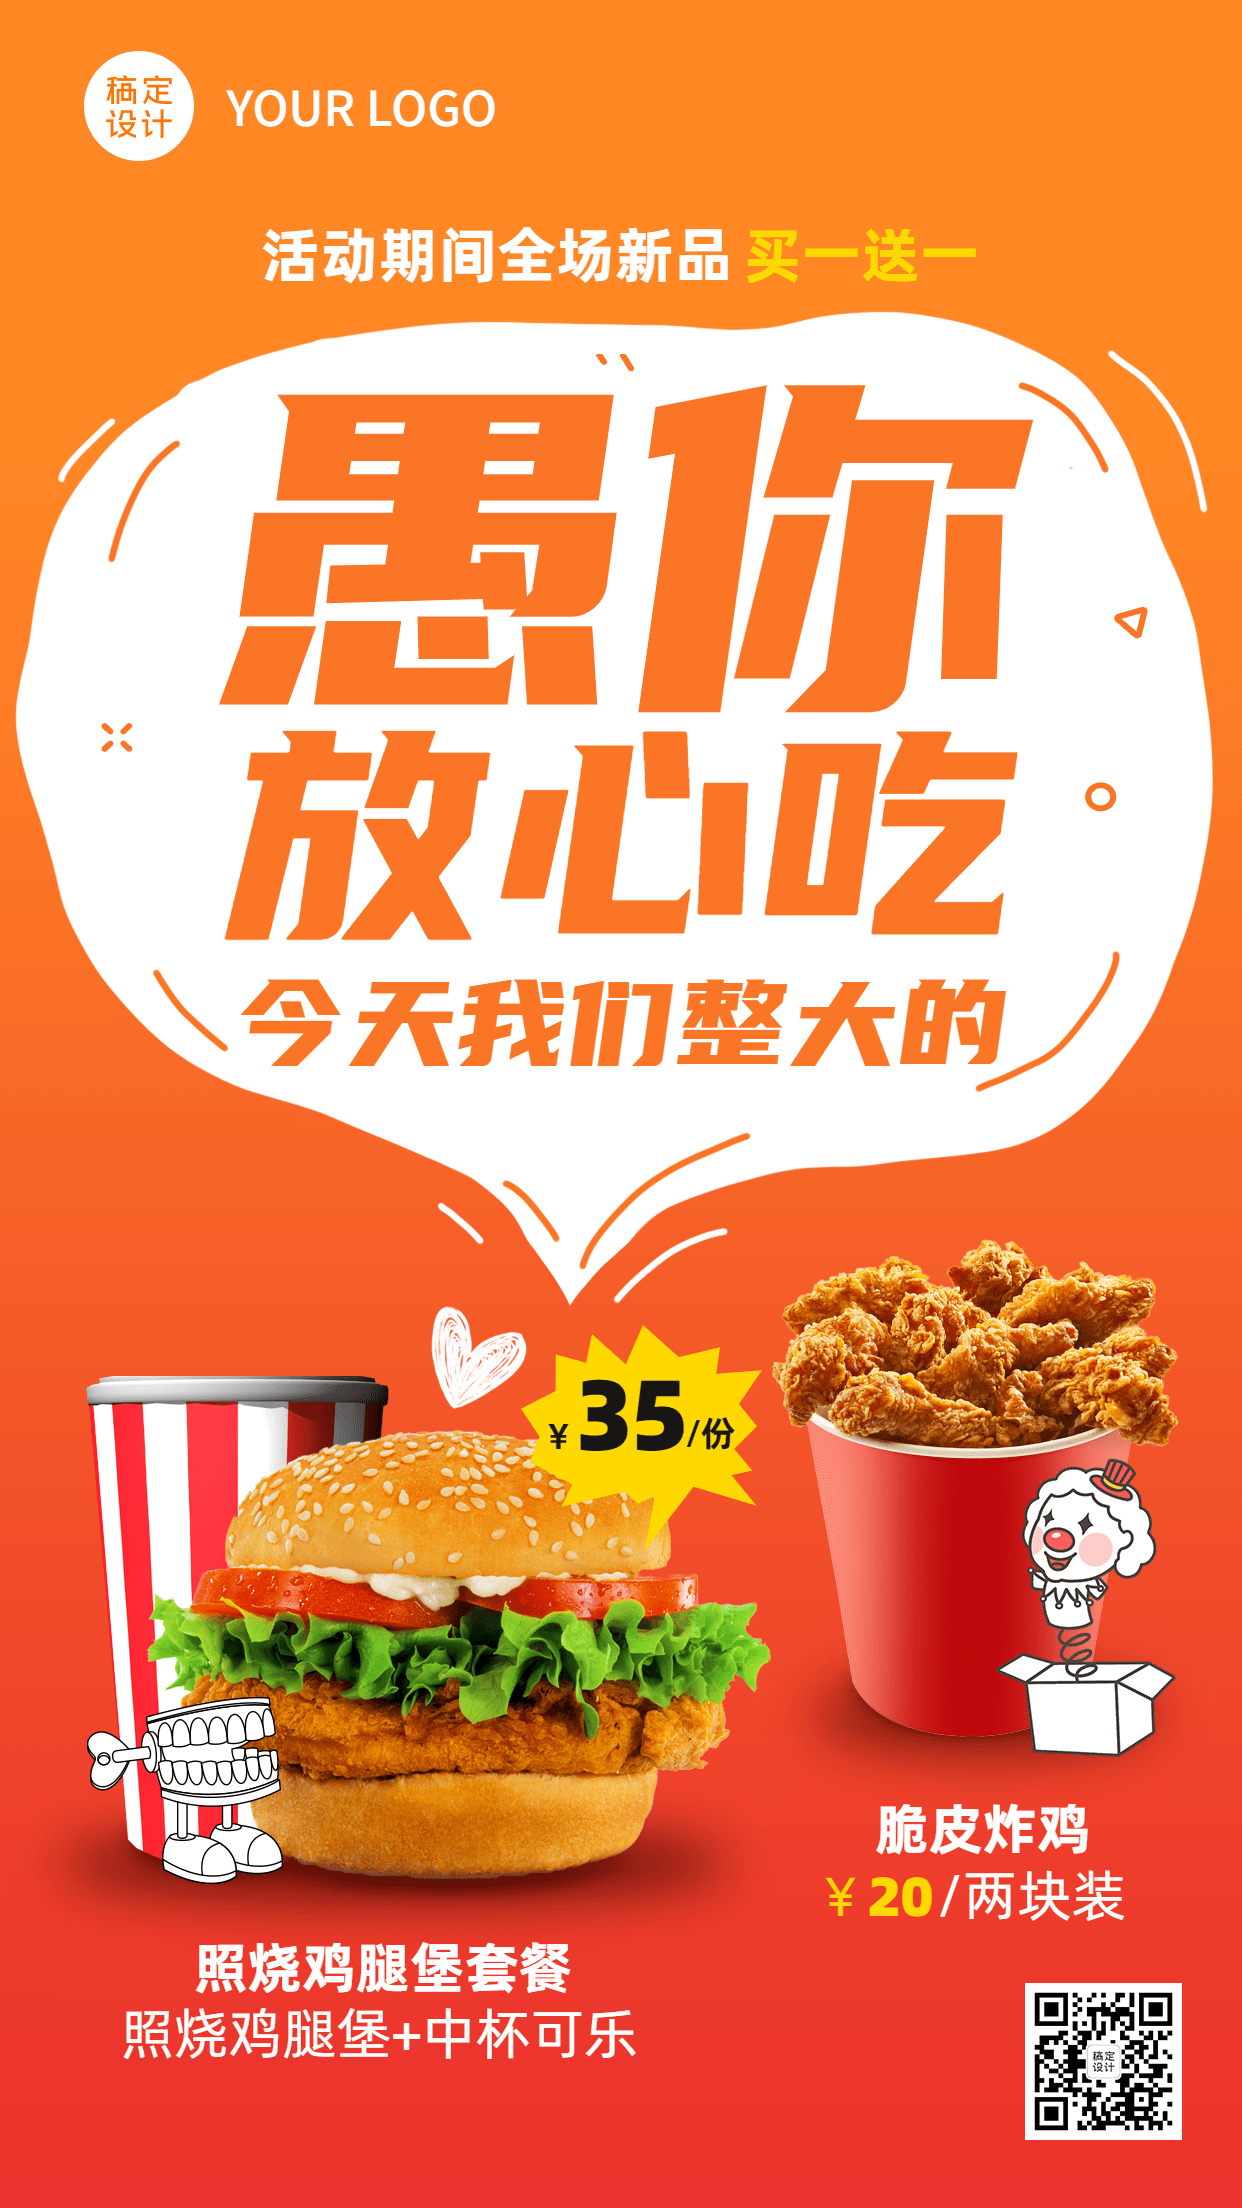 愚人节汉堡炸鸡促销活动餐饮手机海报预览效果